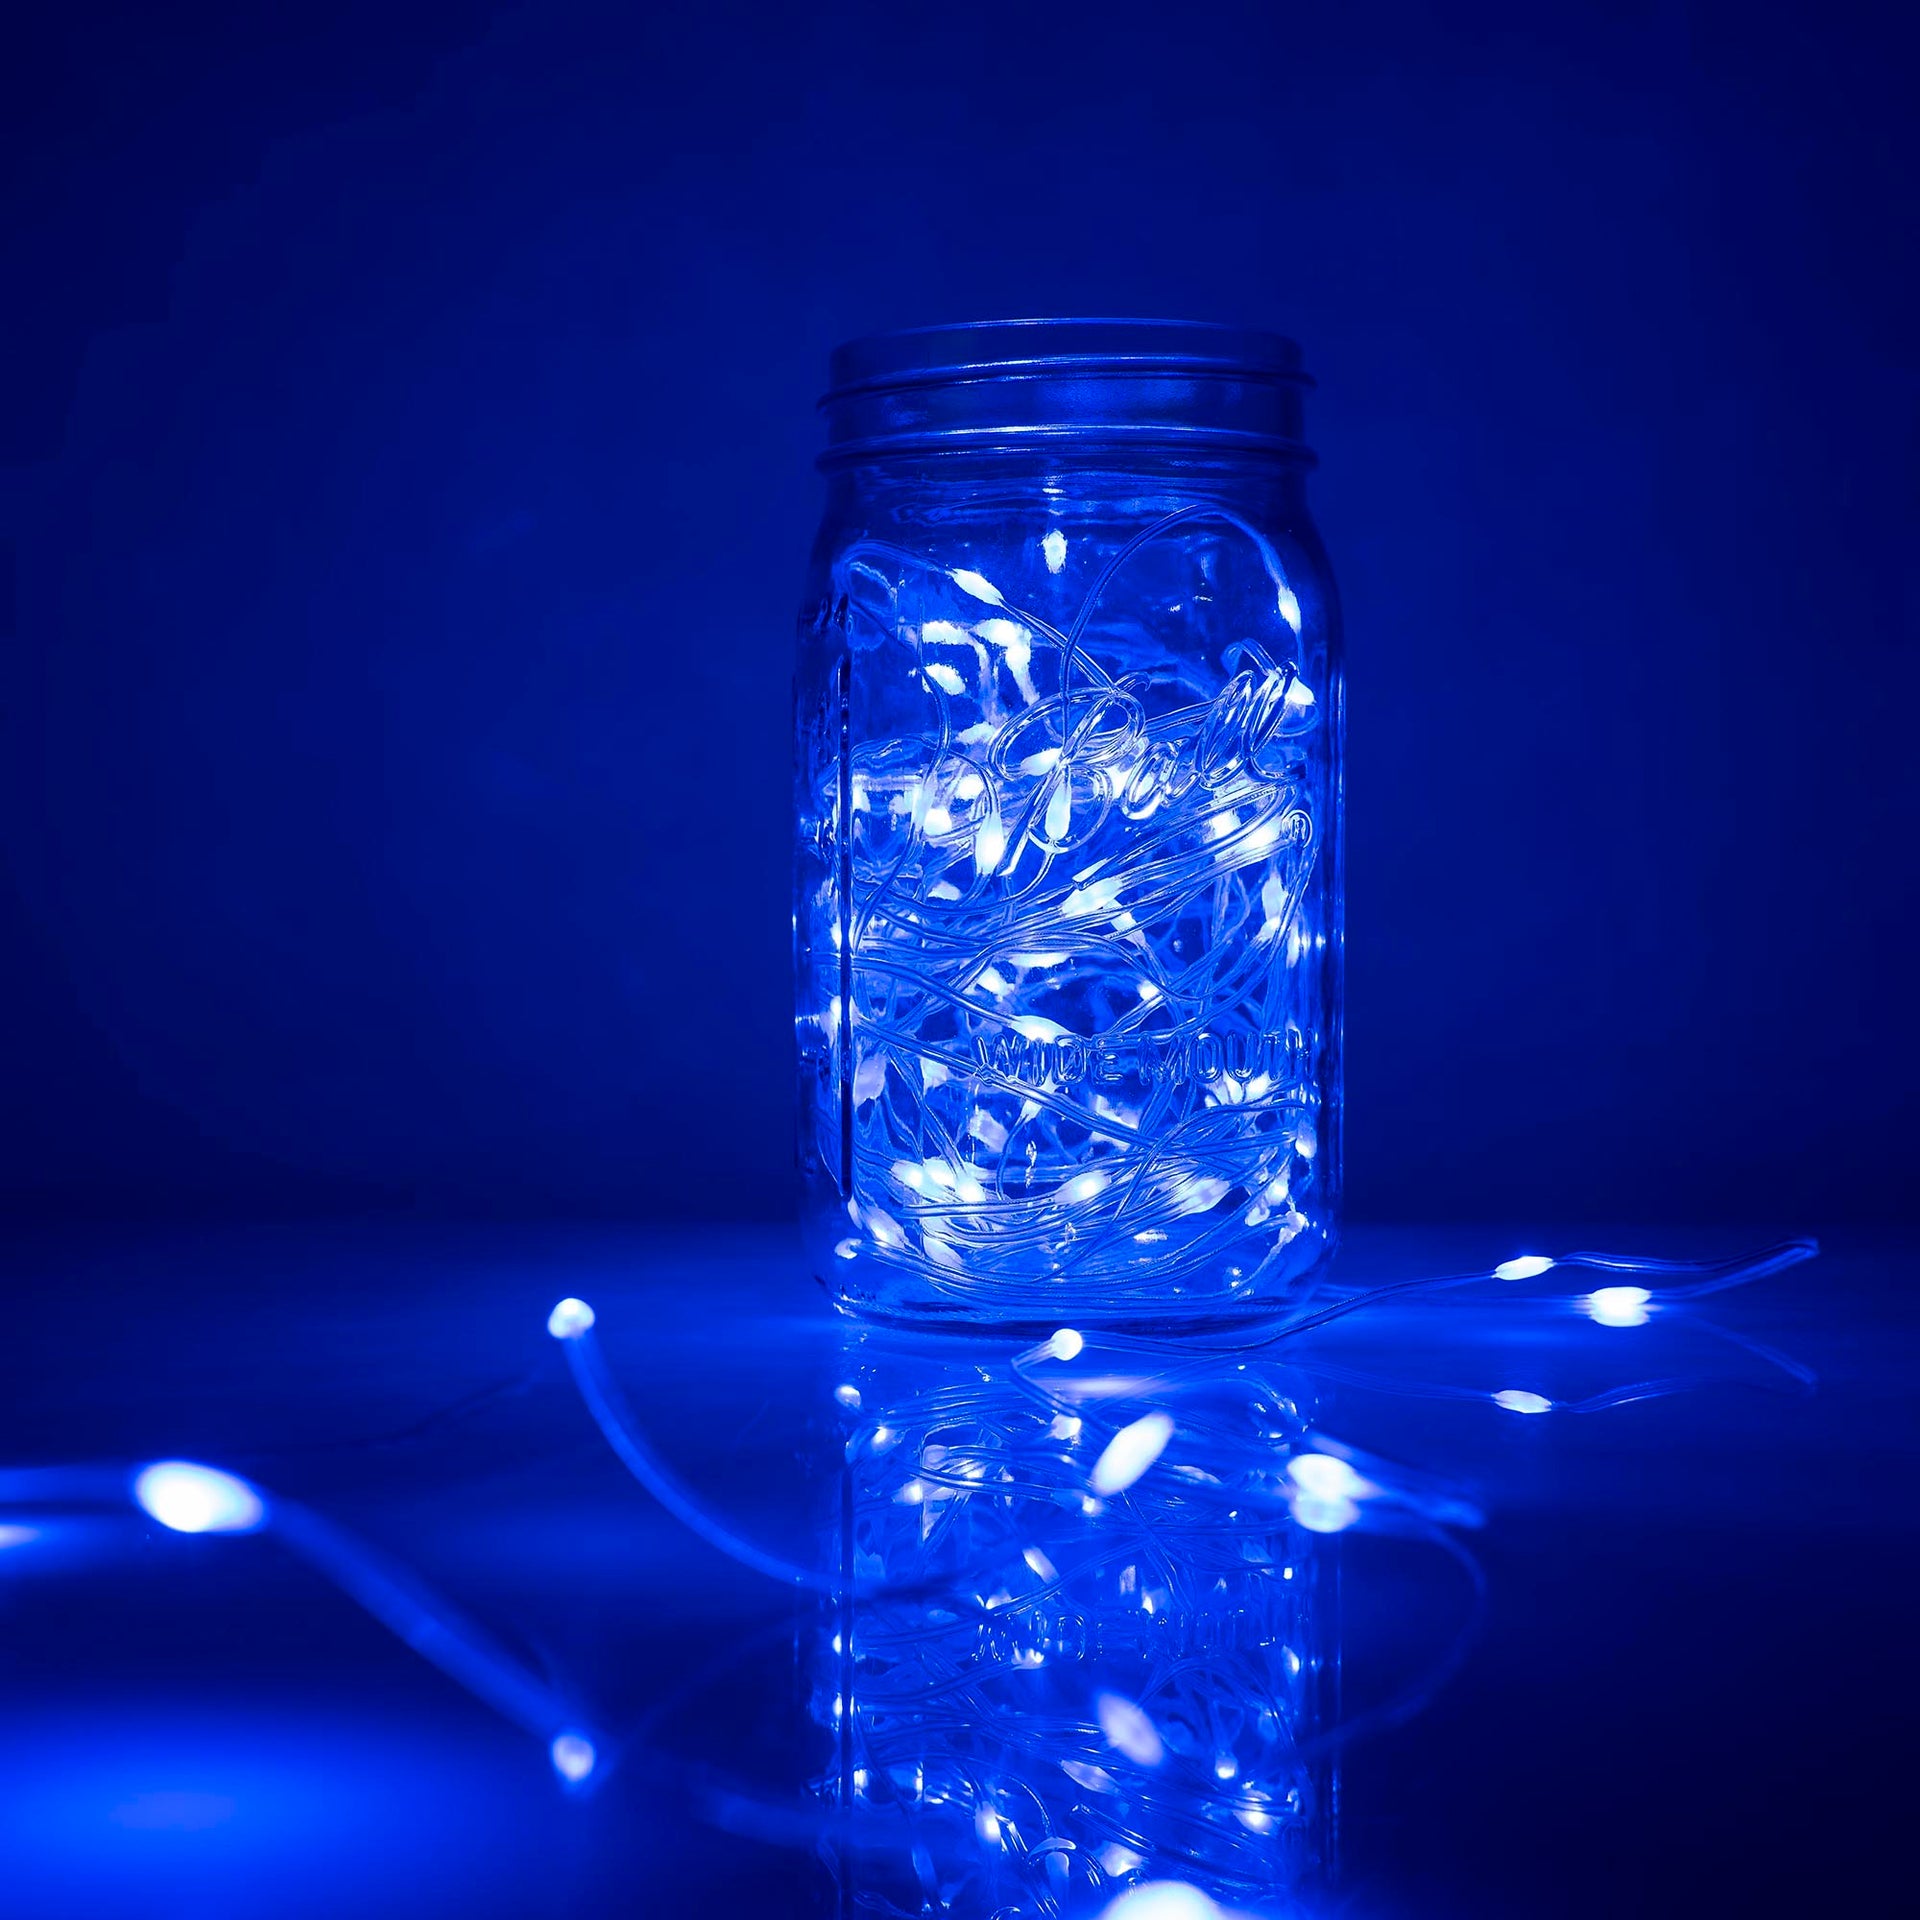 BLUE Flexi Ribbon LED String Lights 33ft 100 LEDs 8 Modes w/6H Timer Waterproof - West Ivory LED Lighting 